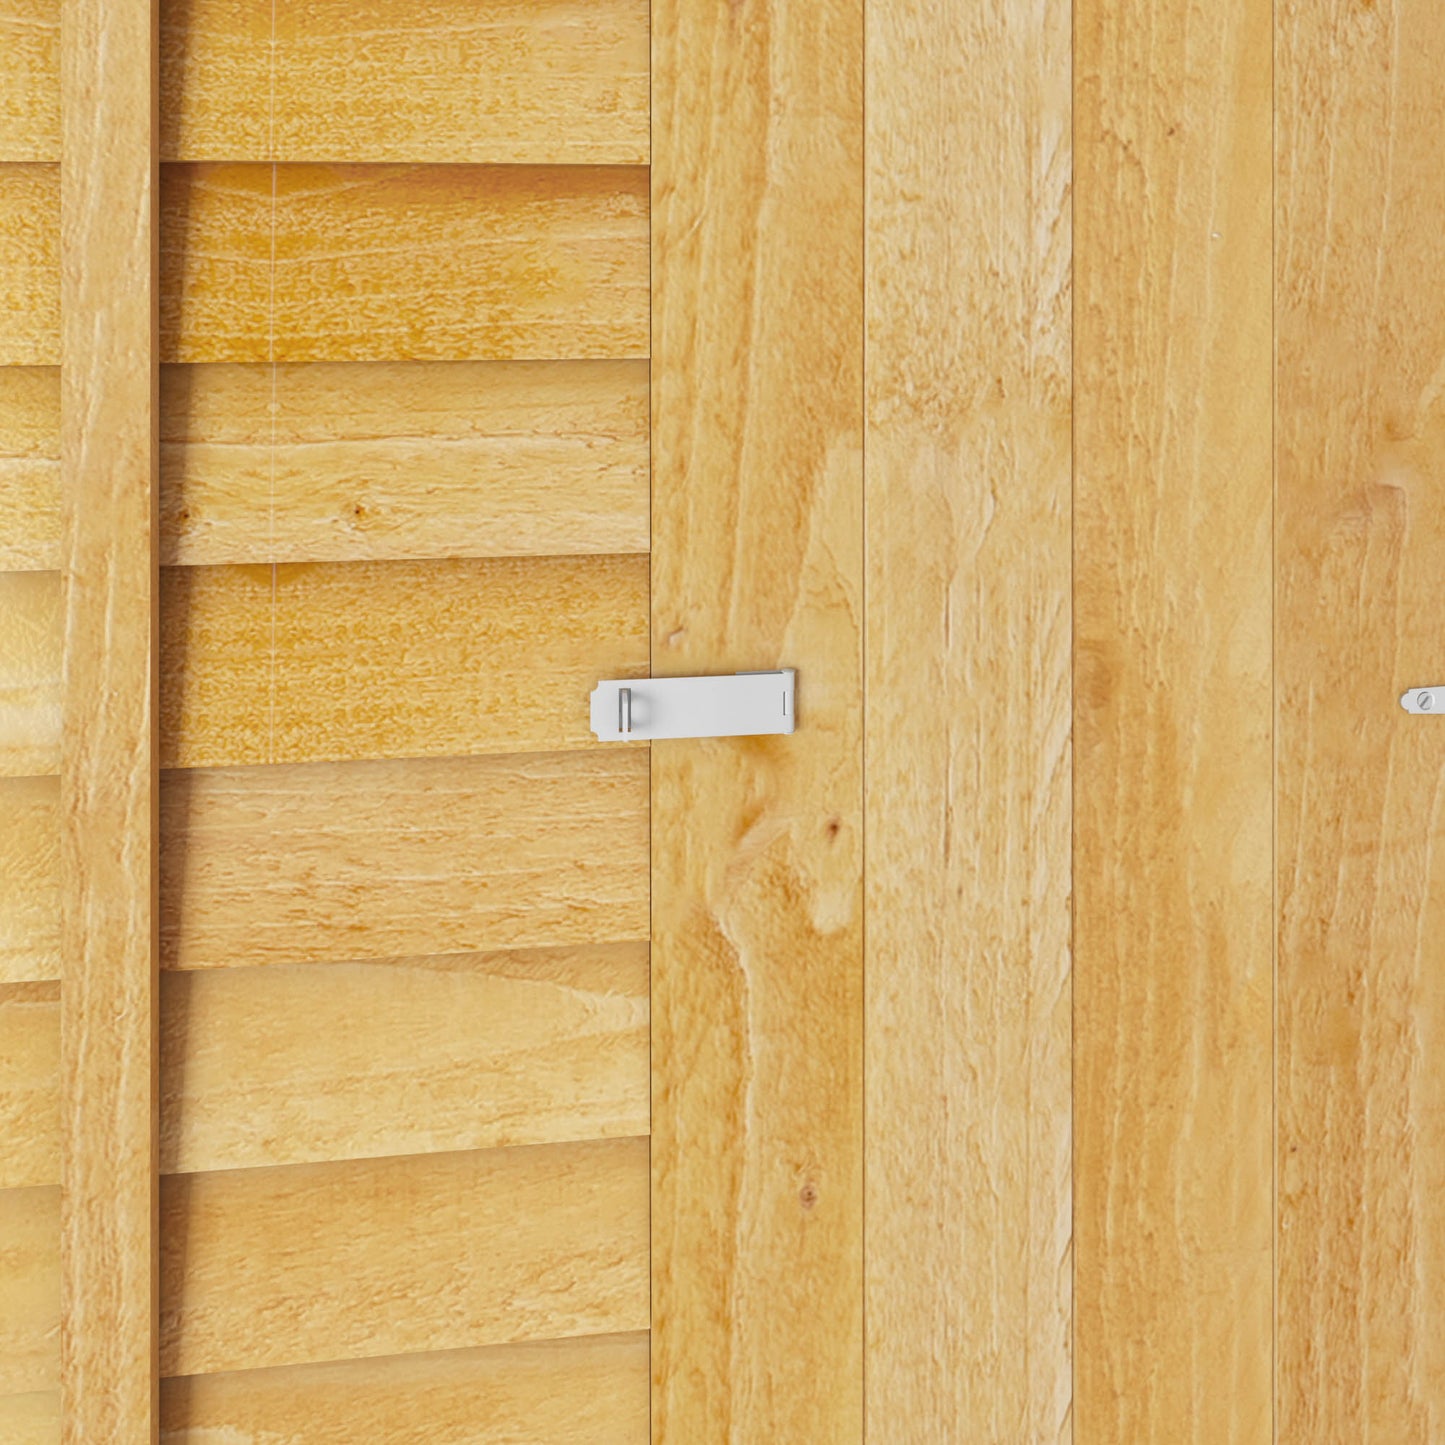 7 x 5 Overlap Single Door Pent Wooden Shed